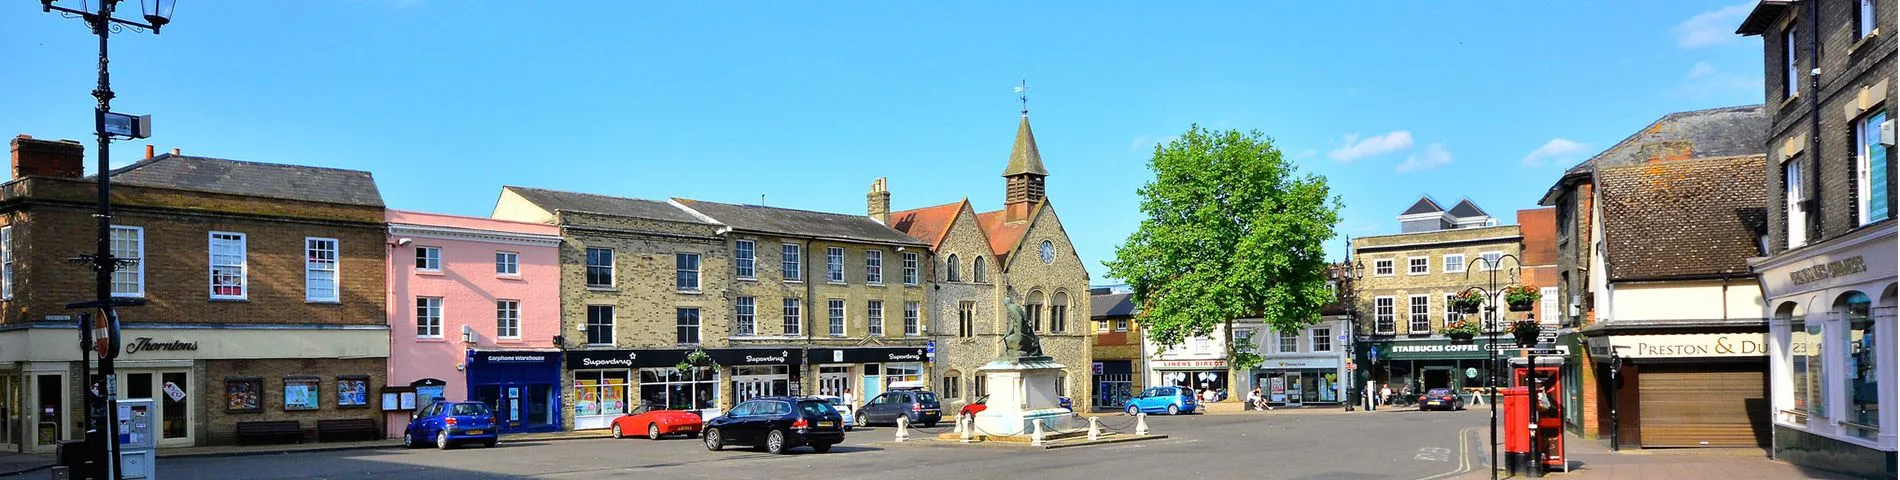 Bury St Edmunds - General